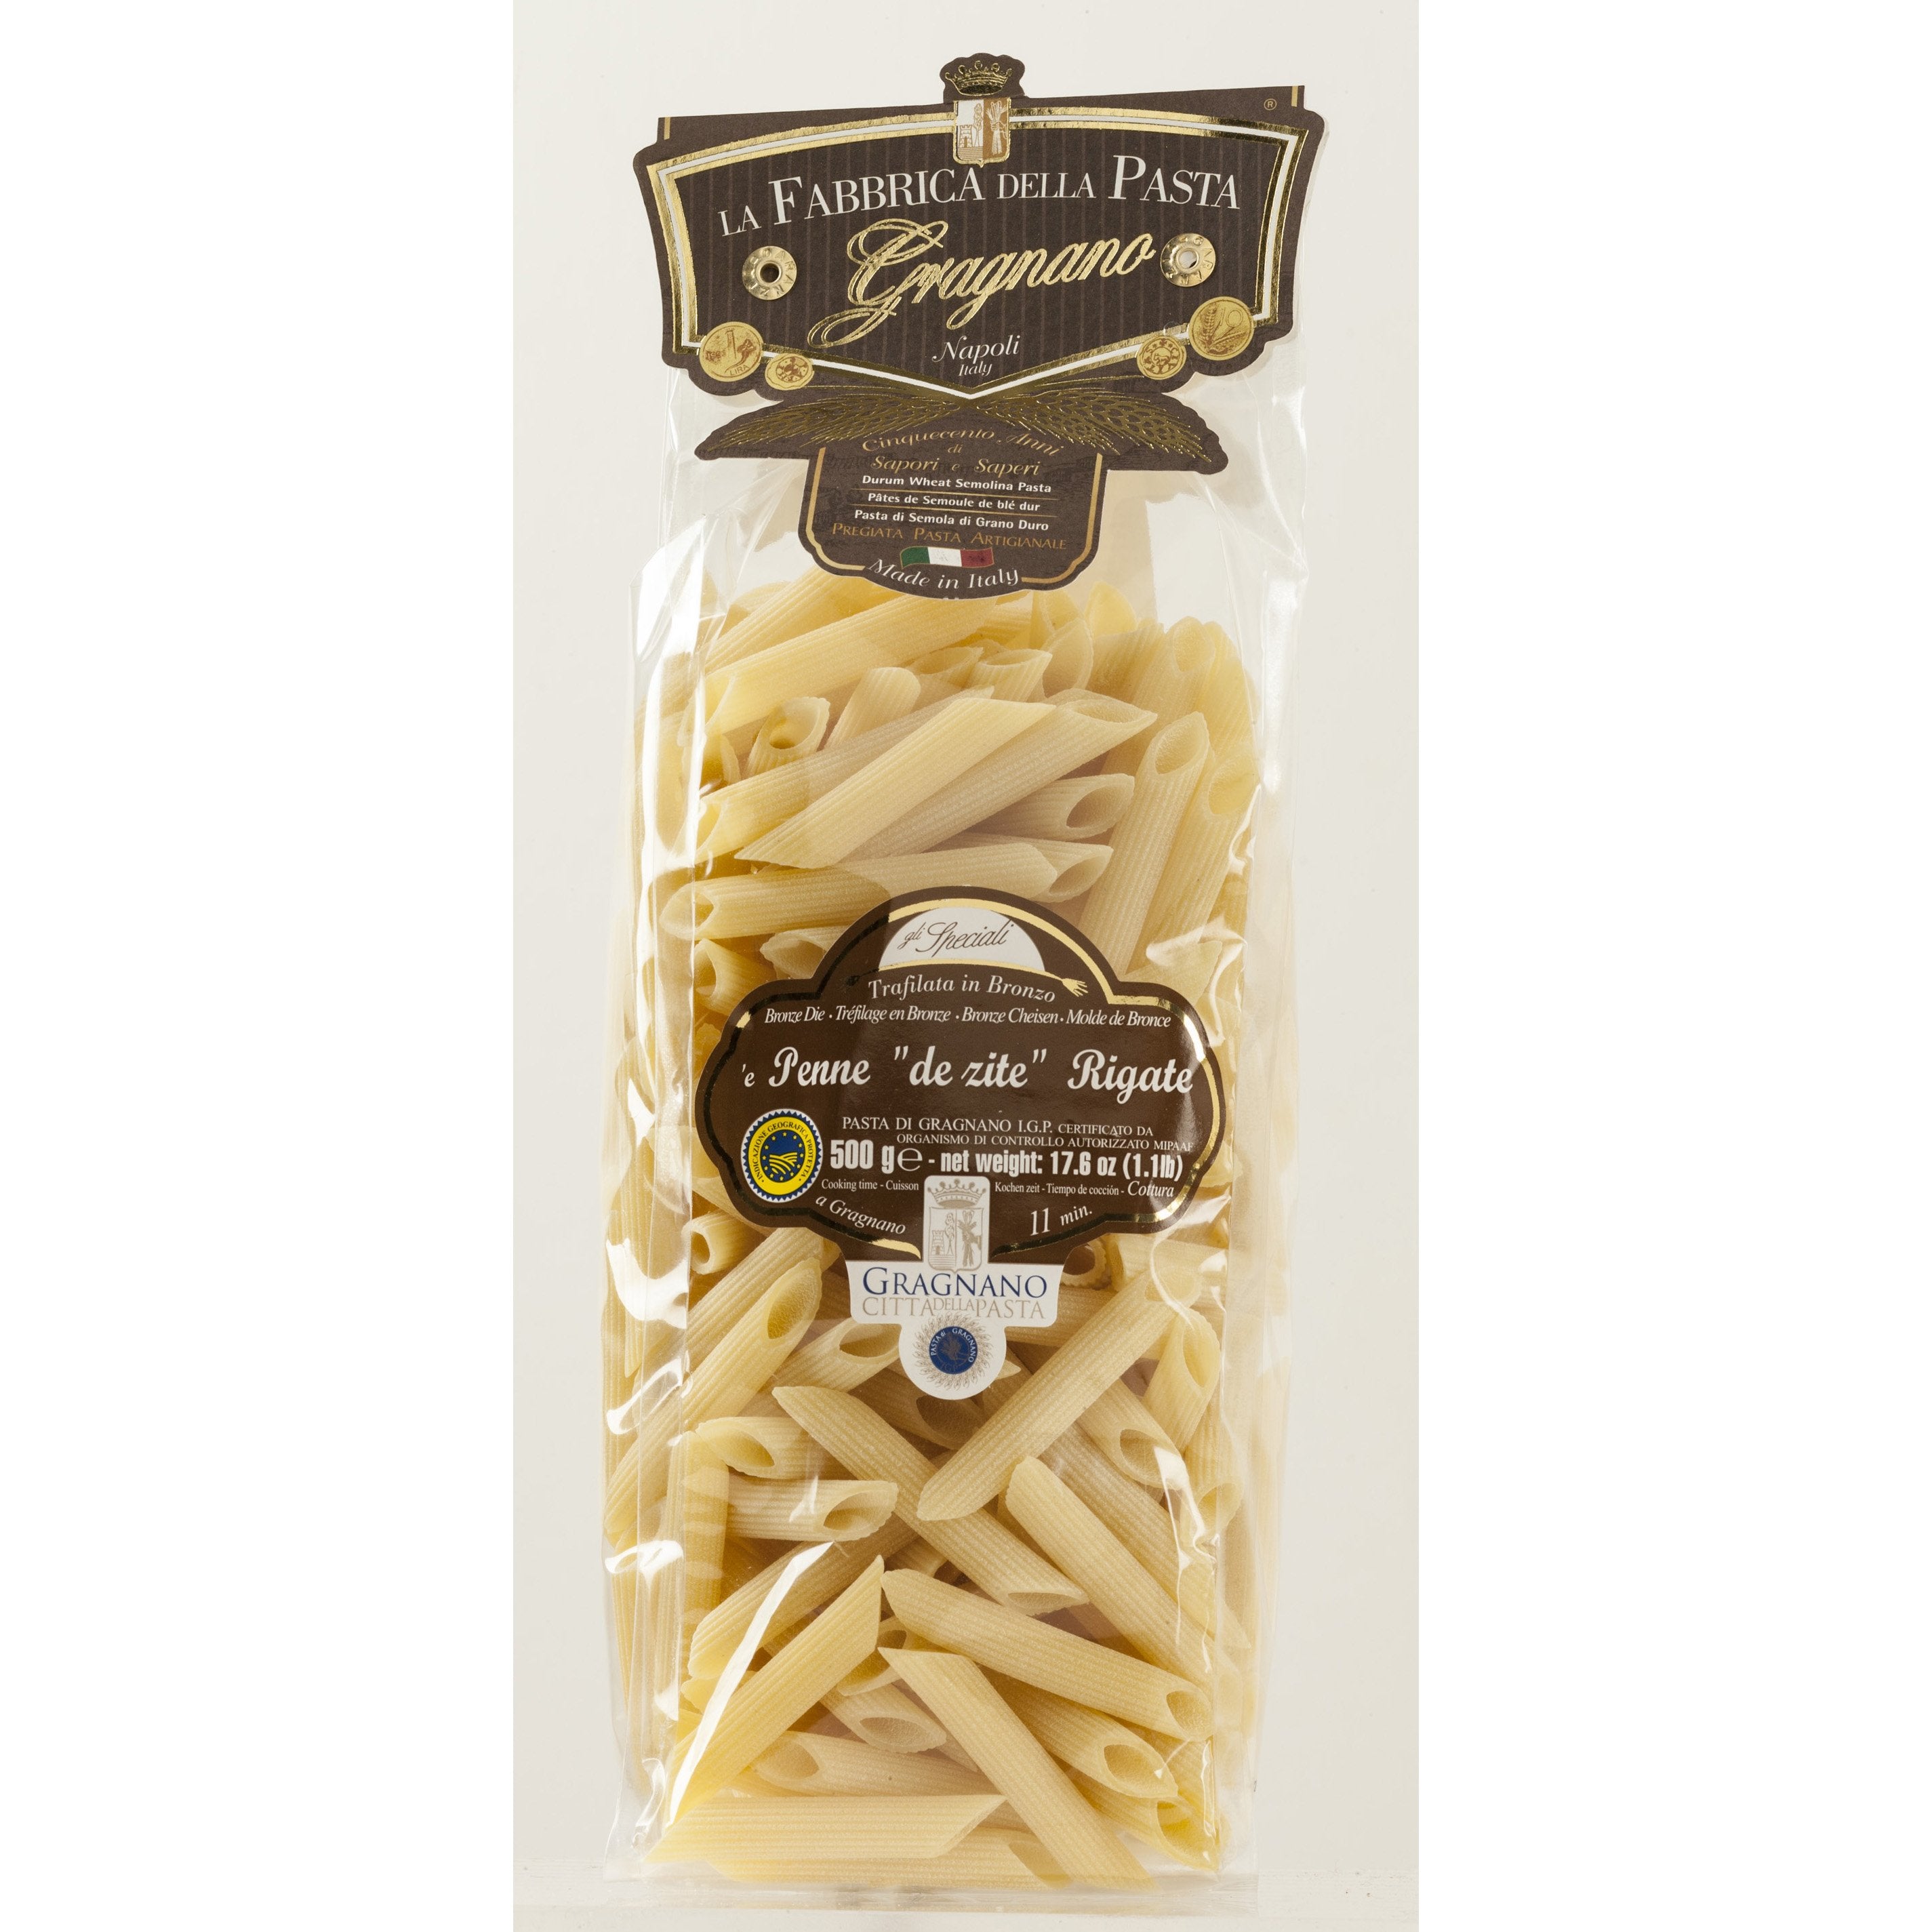 La Fabbrica Della Pasta Penne "de zite" Rigate, #521, 17.6 oz | 500gr